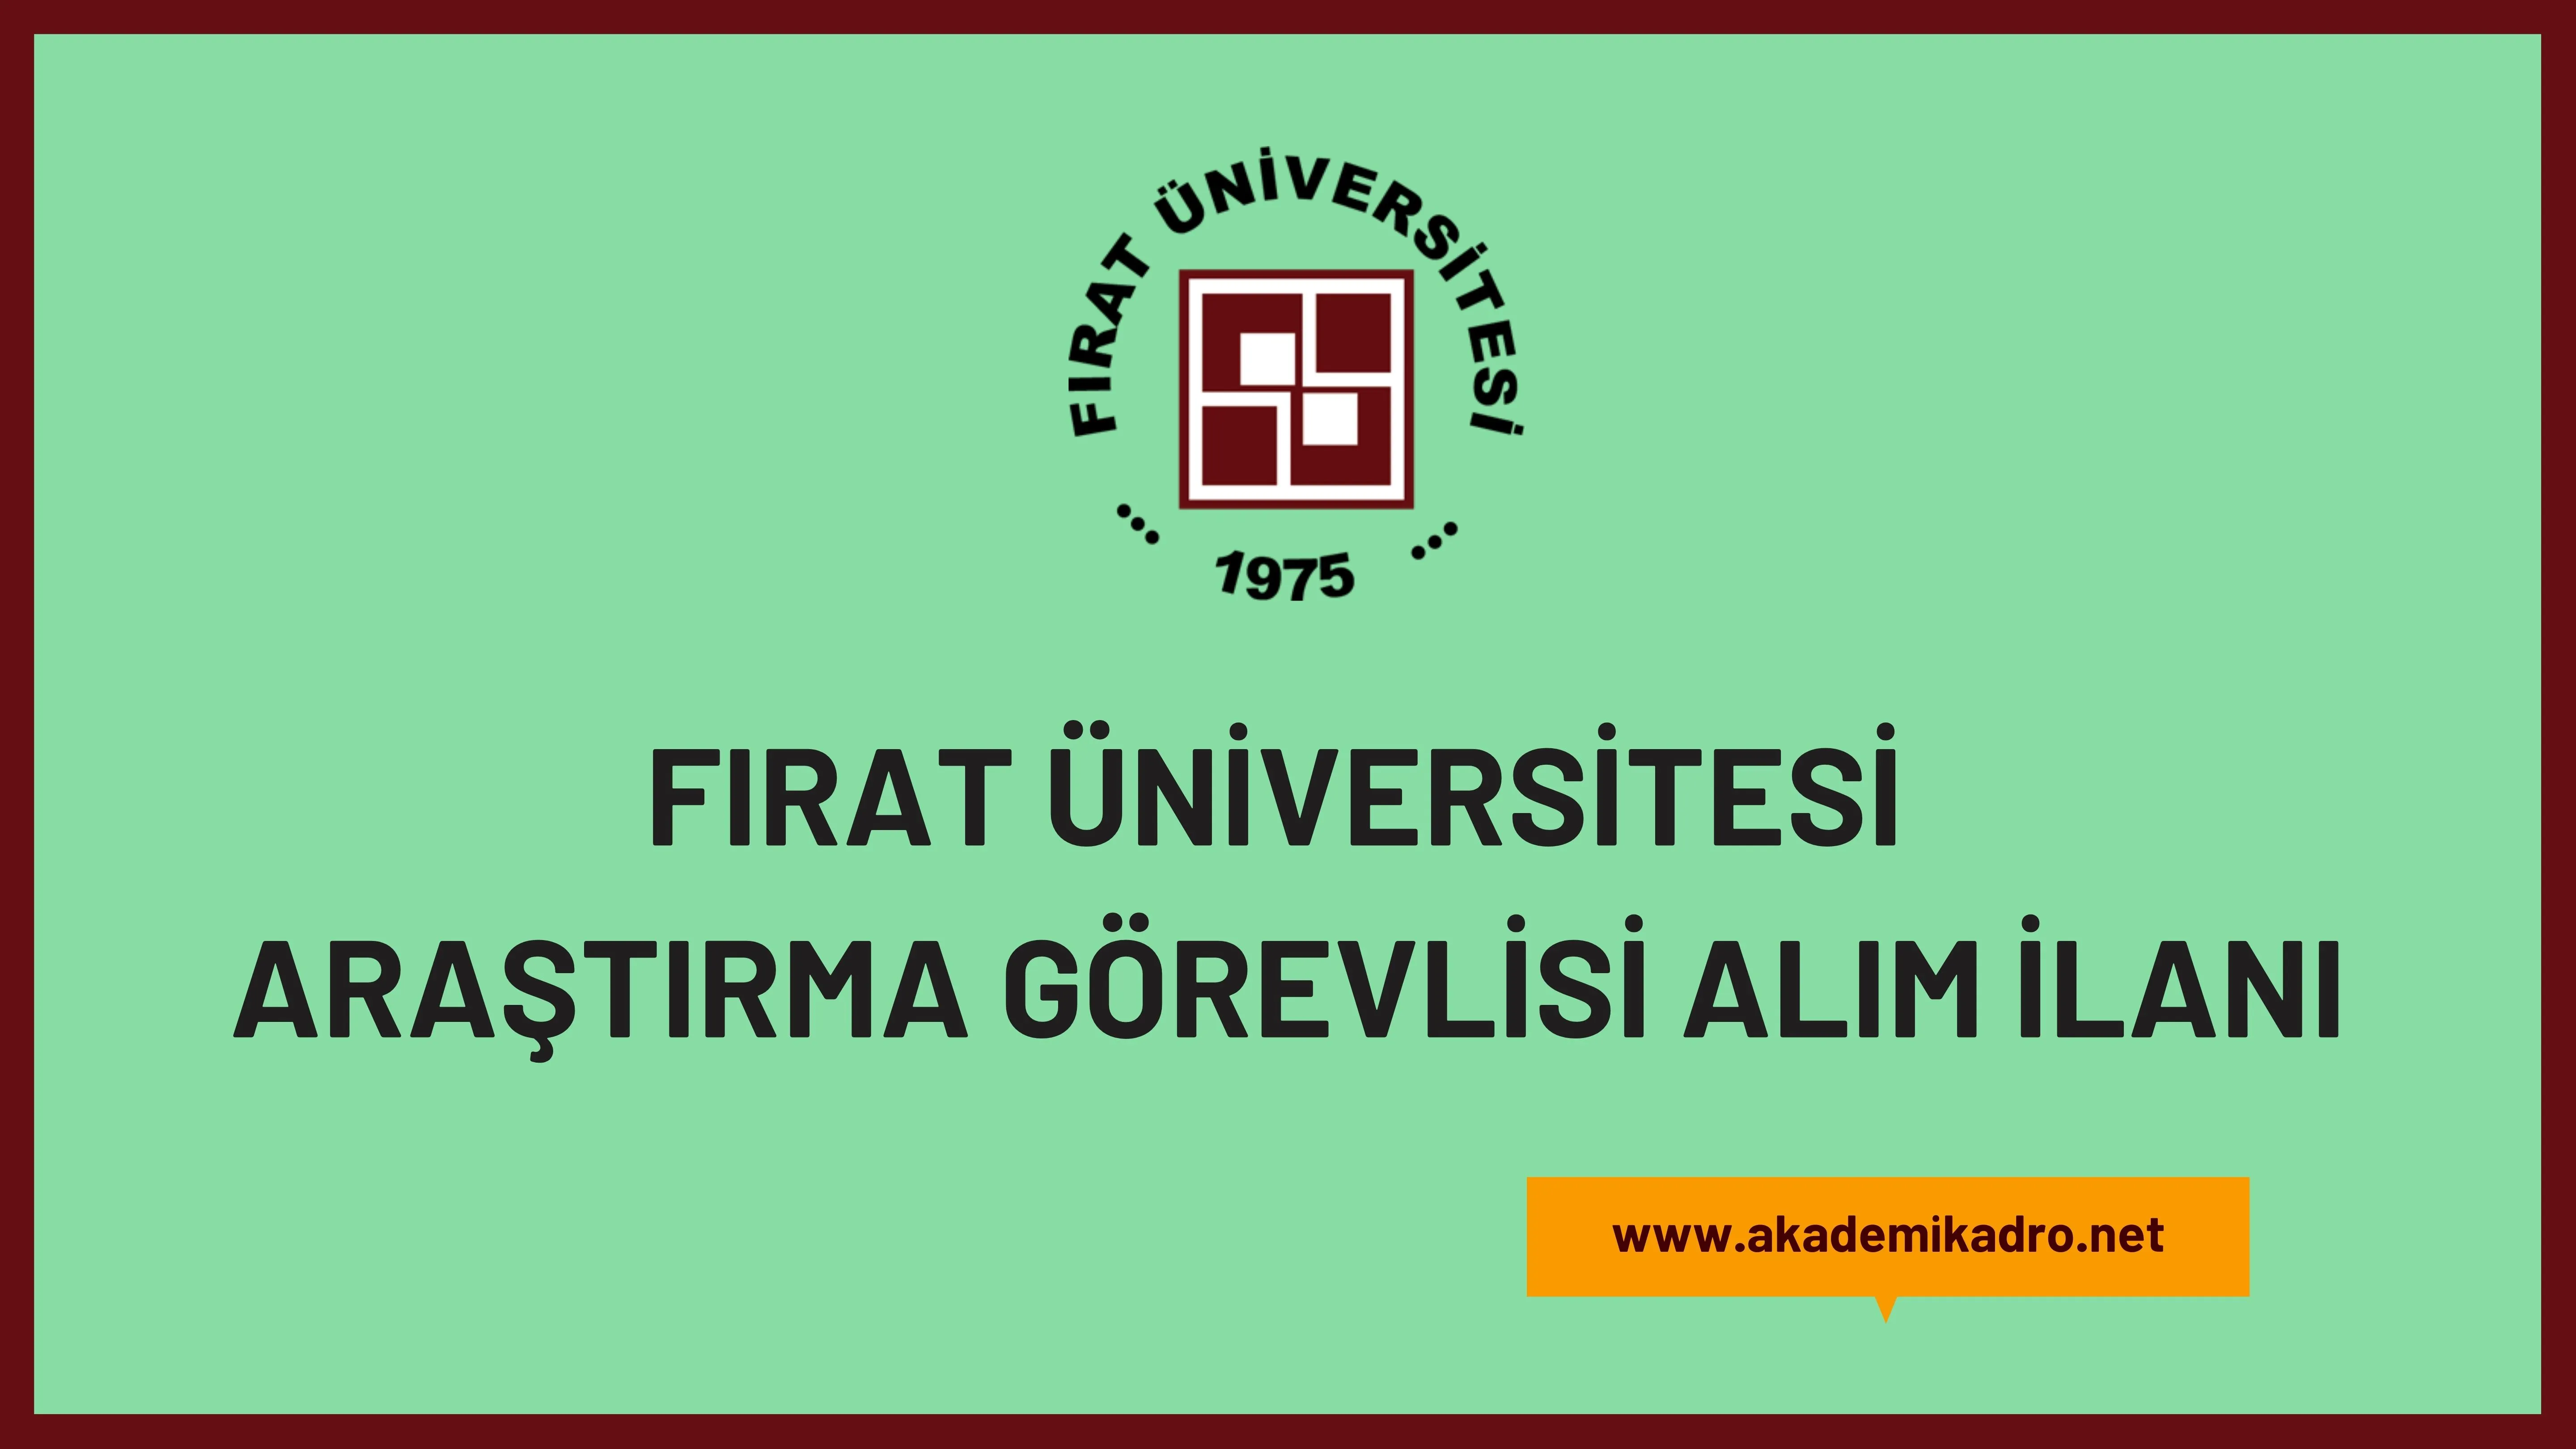 Fırat Üniversitesi 17 Araştırma görevlisi alacaktır. Son başvuru tarihi 14 Aralık 2023